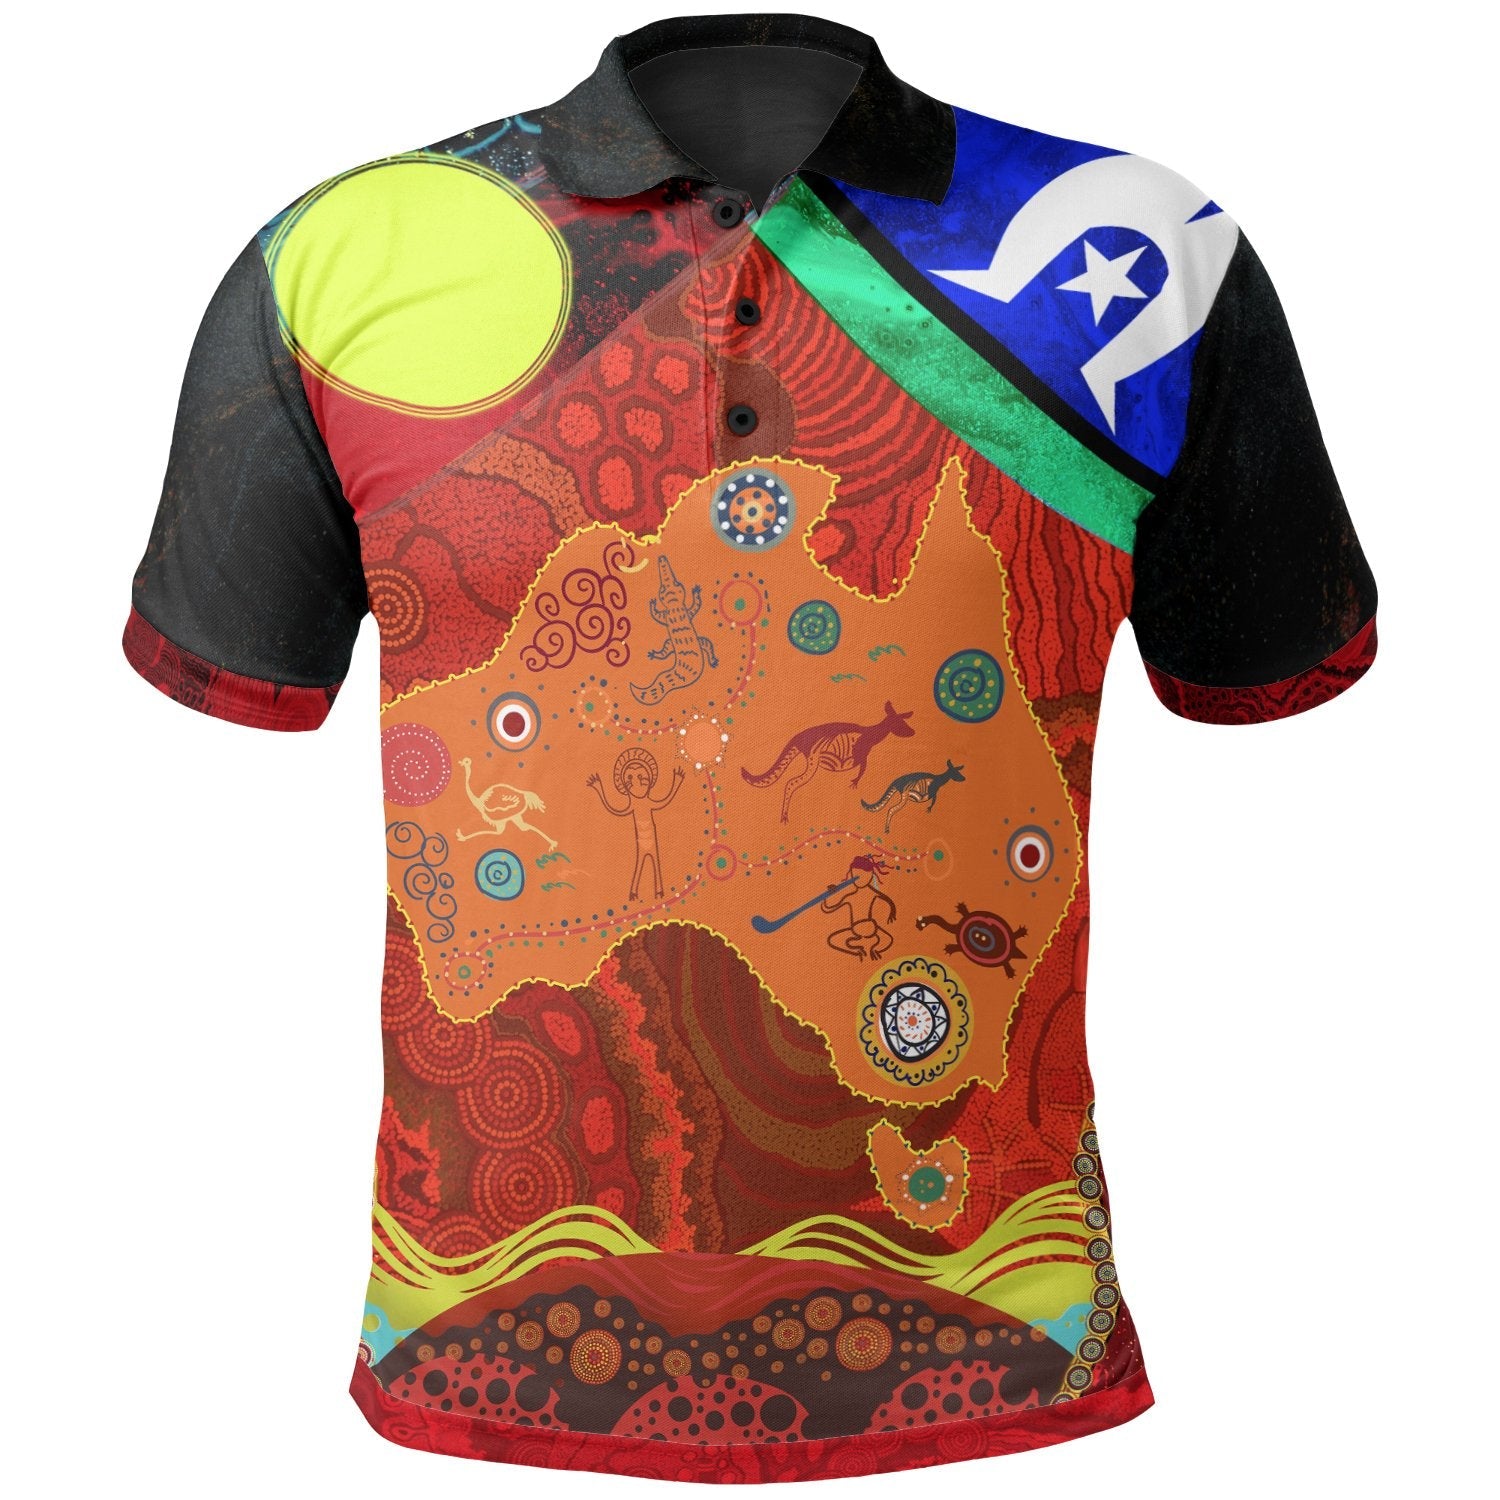 polo-shirt-aboriginal-red-patterns-naidoc-week